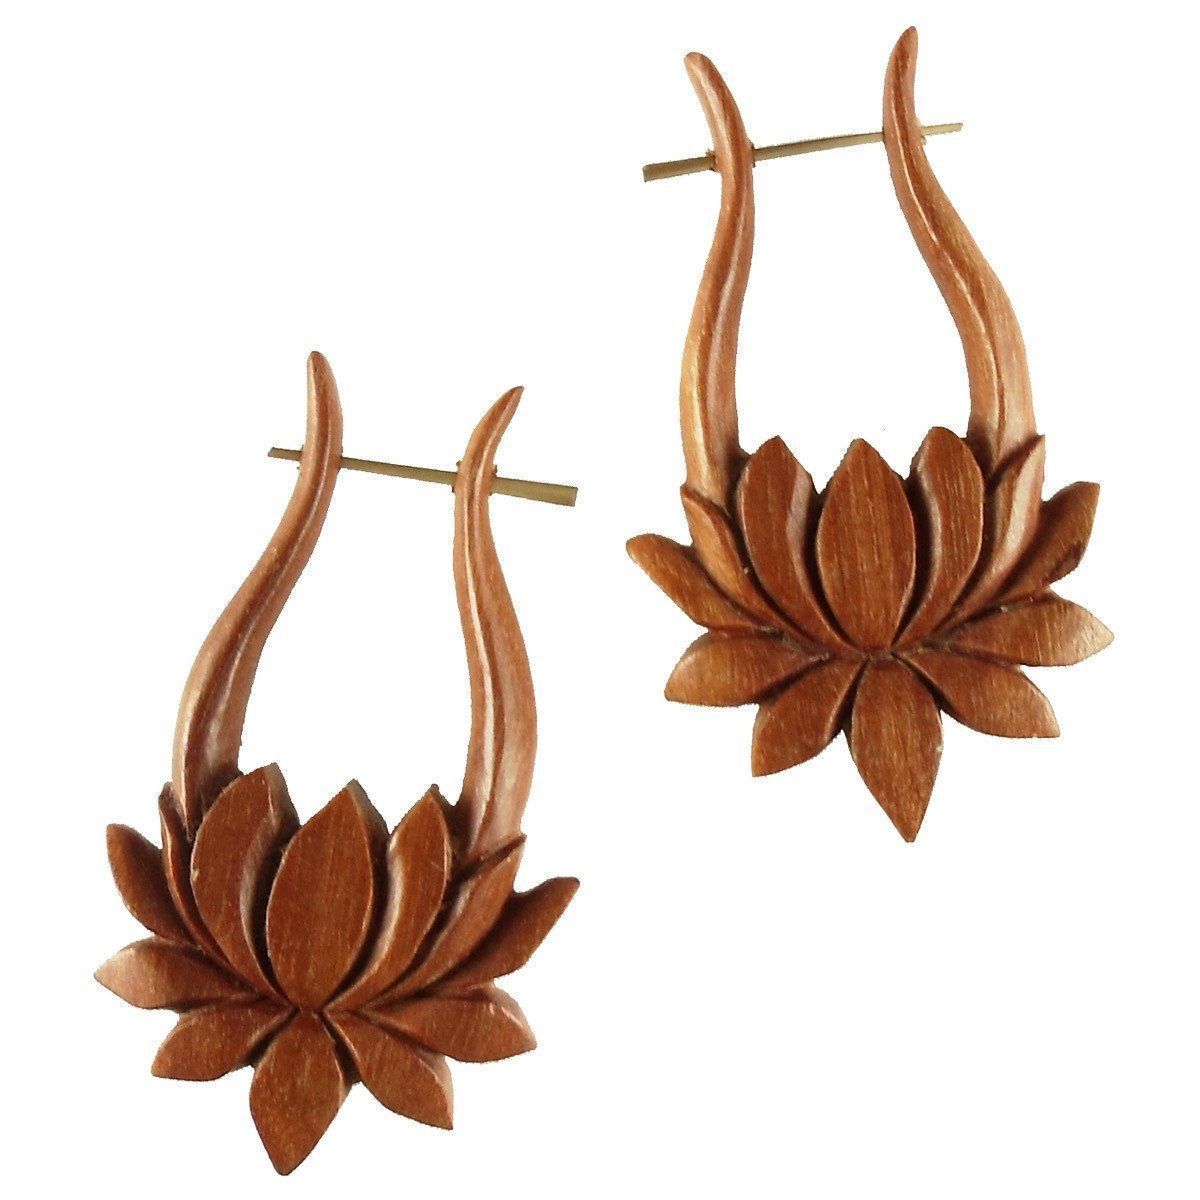 Wood Earrings :|: Lotus. Tribal Earrings, wood. 1 1/4 inch W x 2 inch L. | Wood Earrings